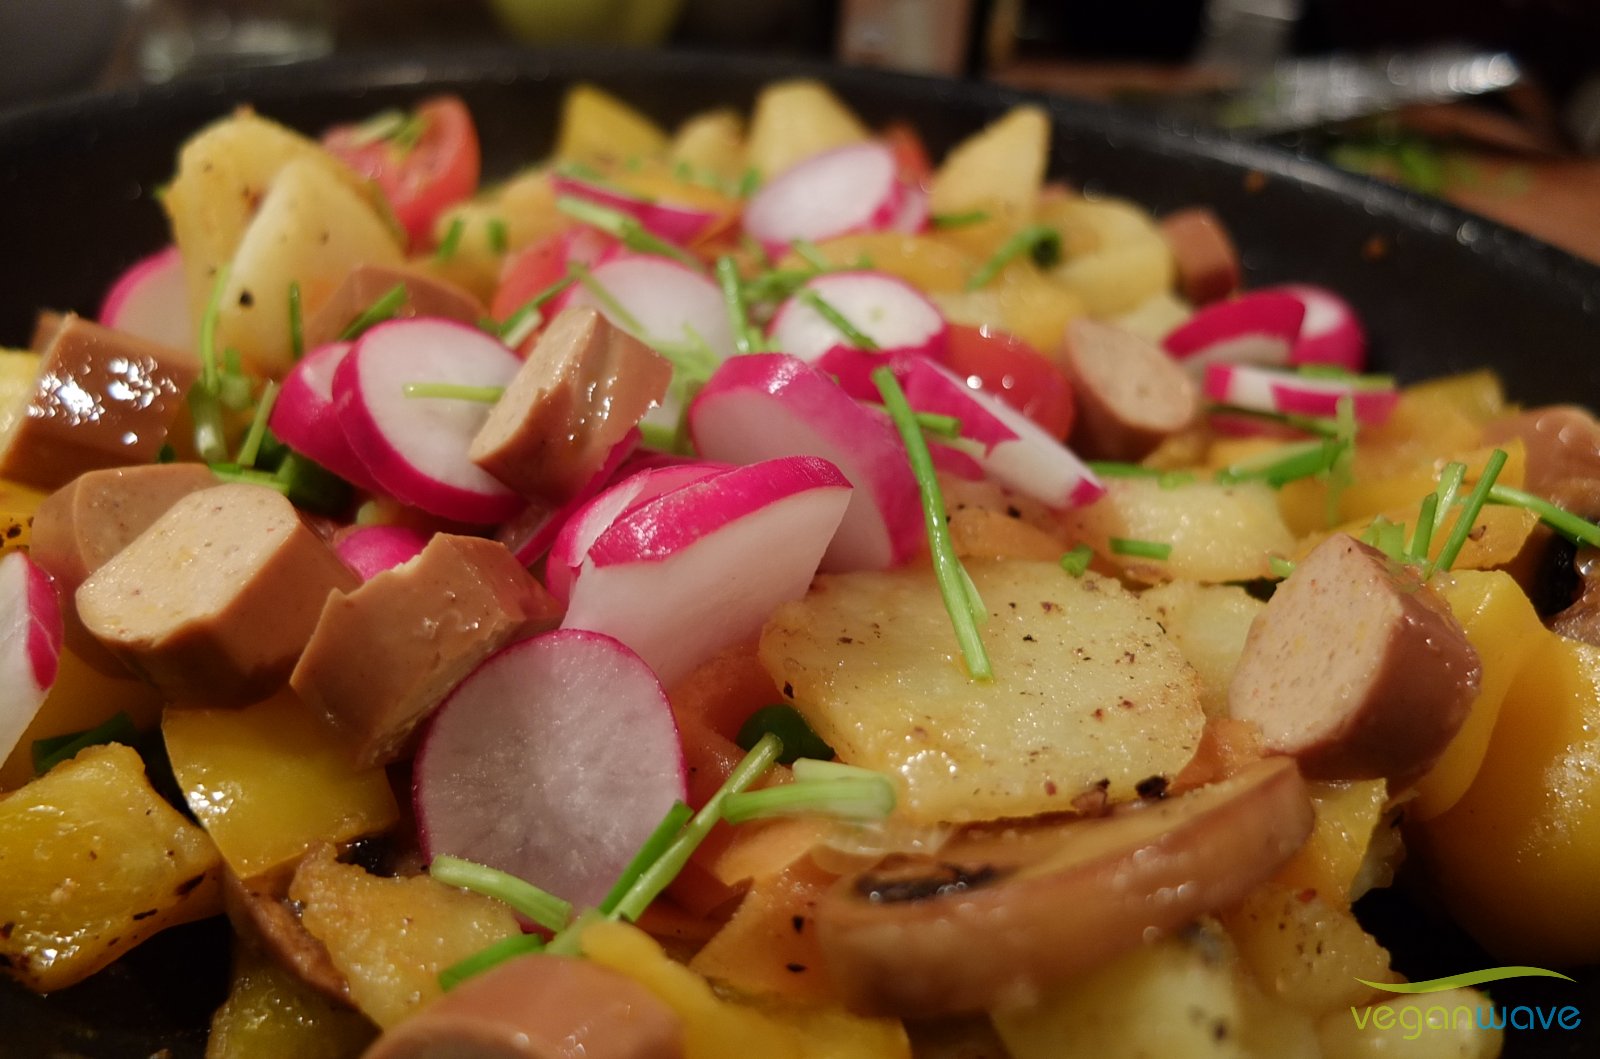 Bauernpfanne vegan mit Kartoffeln und Radieschen - veganwave